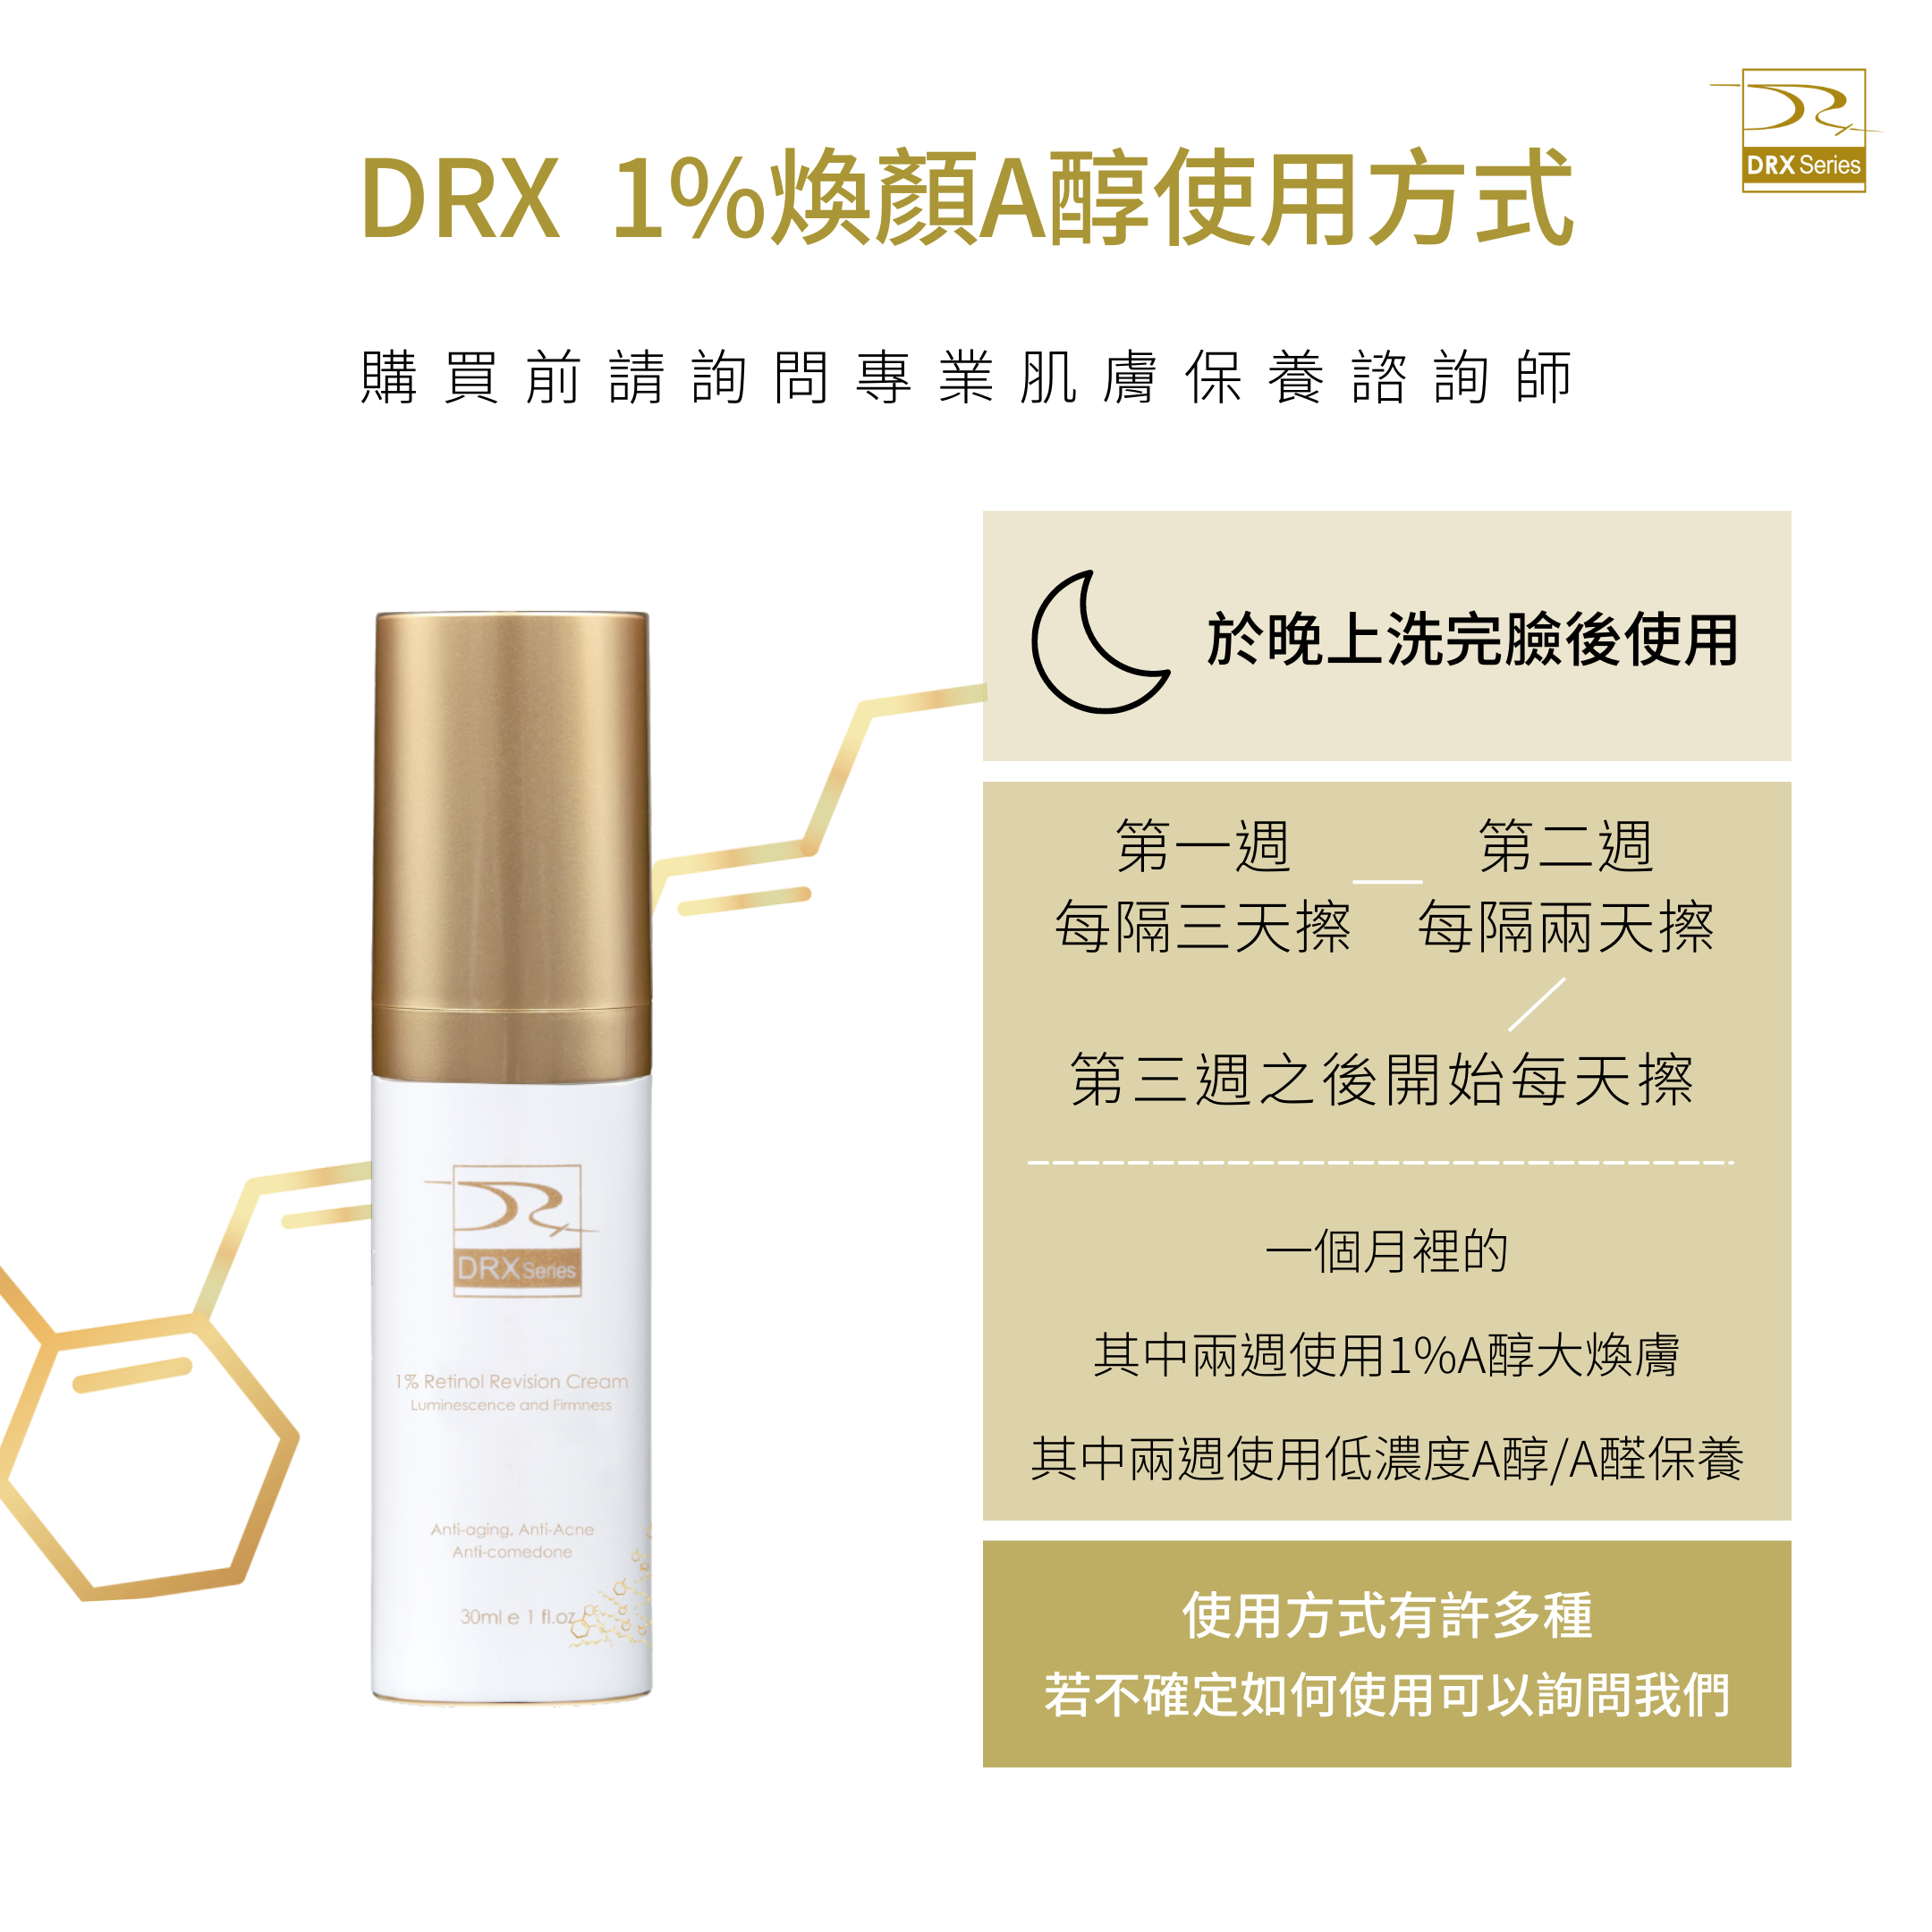 DRX達特仕給您最好的煥膚產品，DRX達特仕的DRX 1%煥顏A醇，解決您的肌膚問題，可以延緩衰老、改善膚質、改善粉刺、改善青春痘、改善皮膚暗沈、改善膚色不均，透過特殊技術，使皮膚代謝效果更上一層樓！